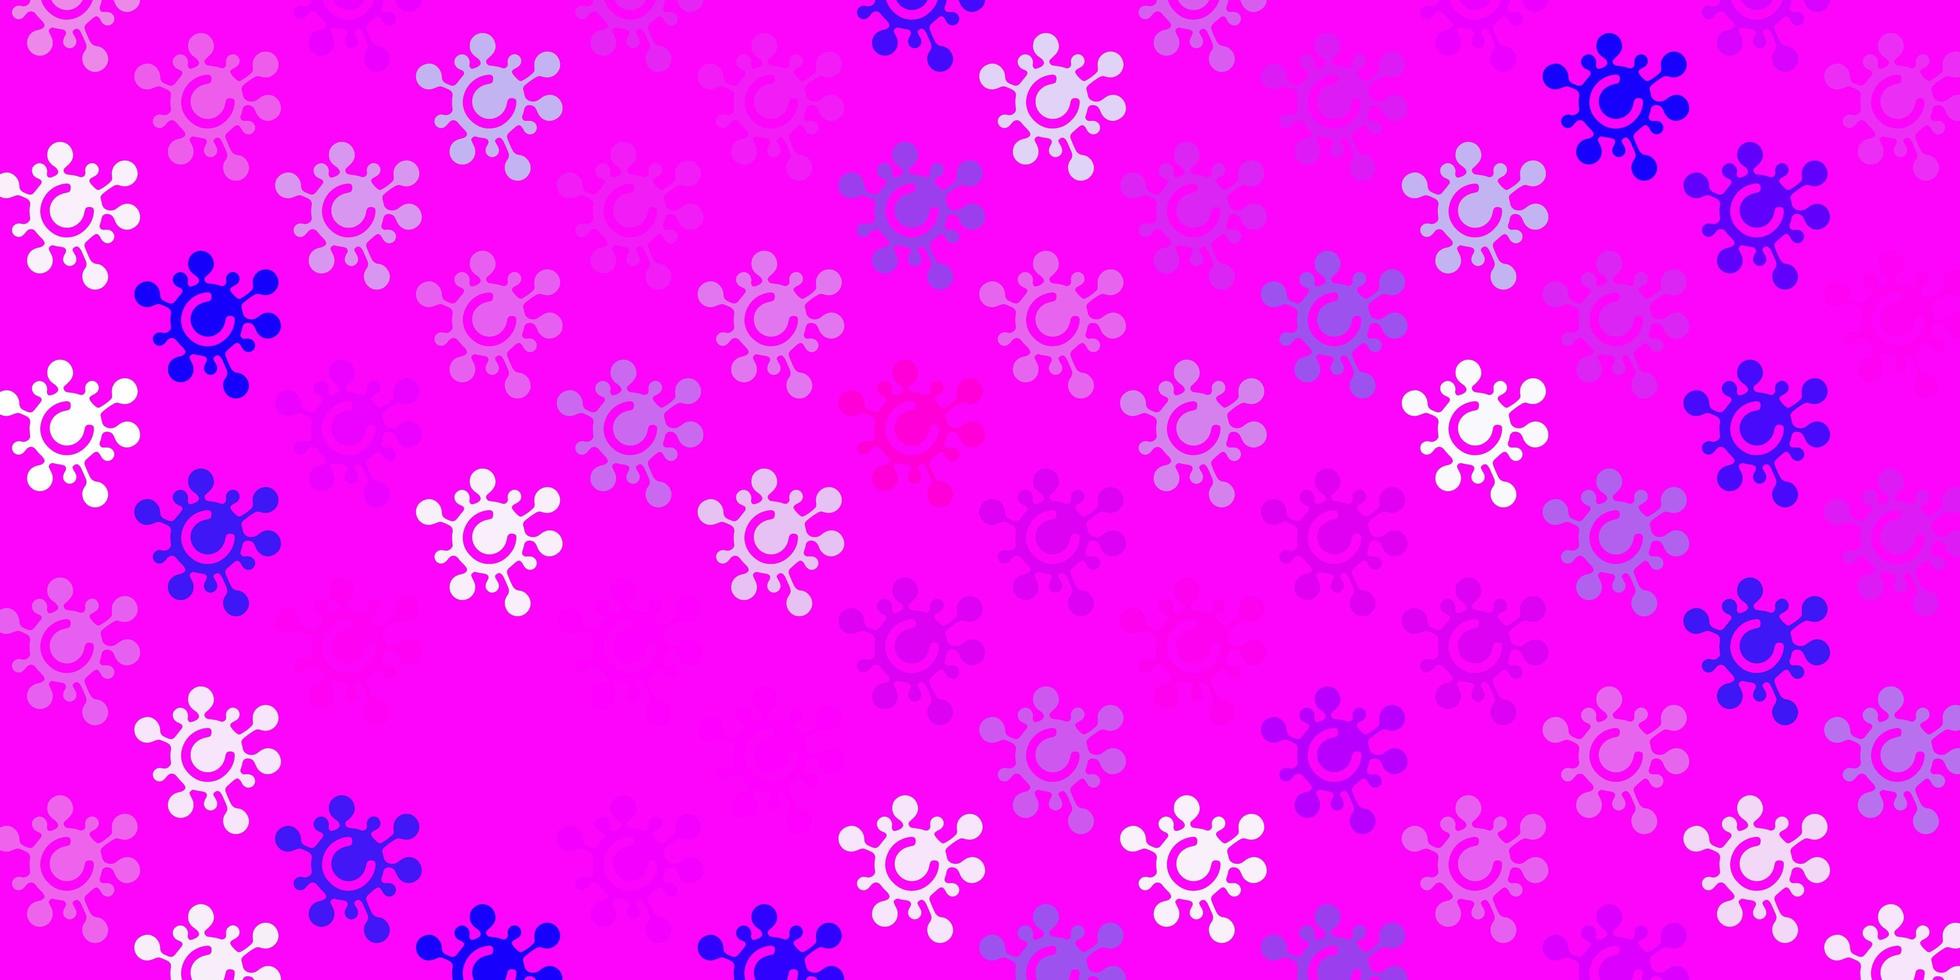 ljuslila, rosa vektor bakgrund med virussymboler